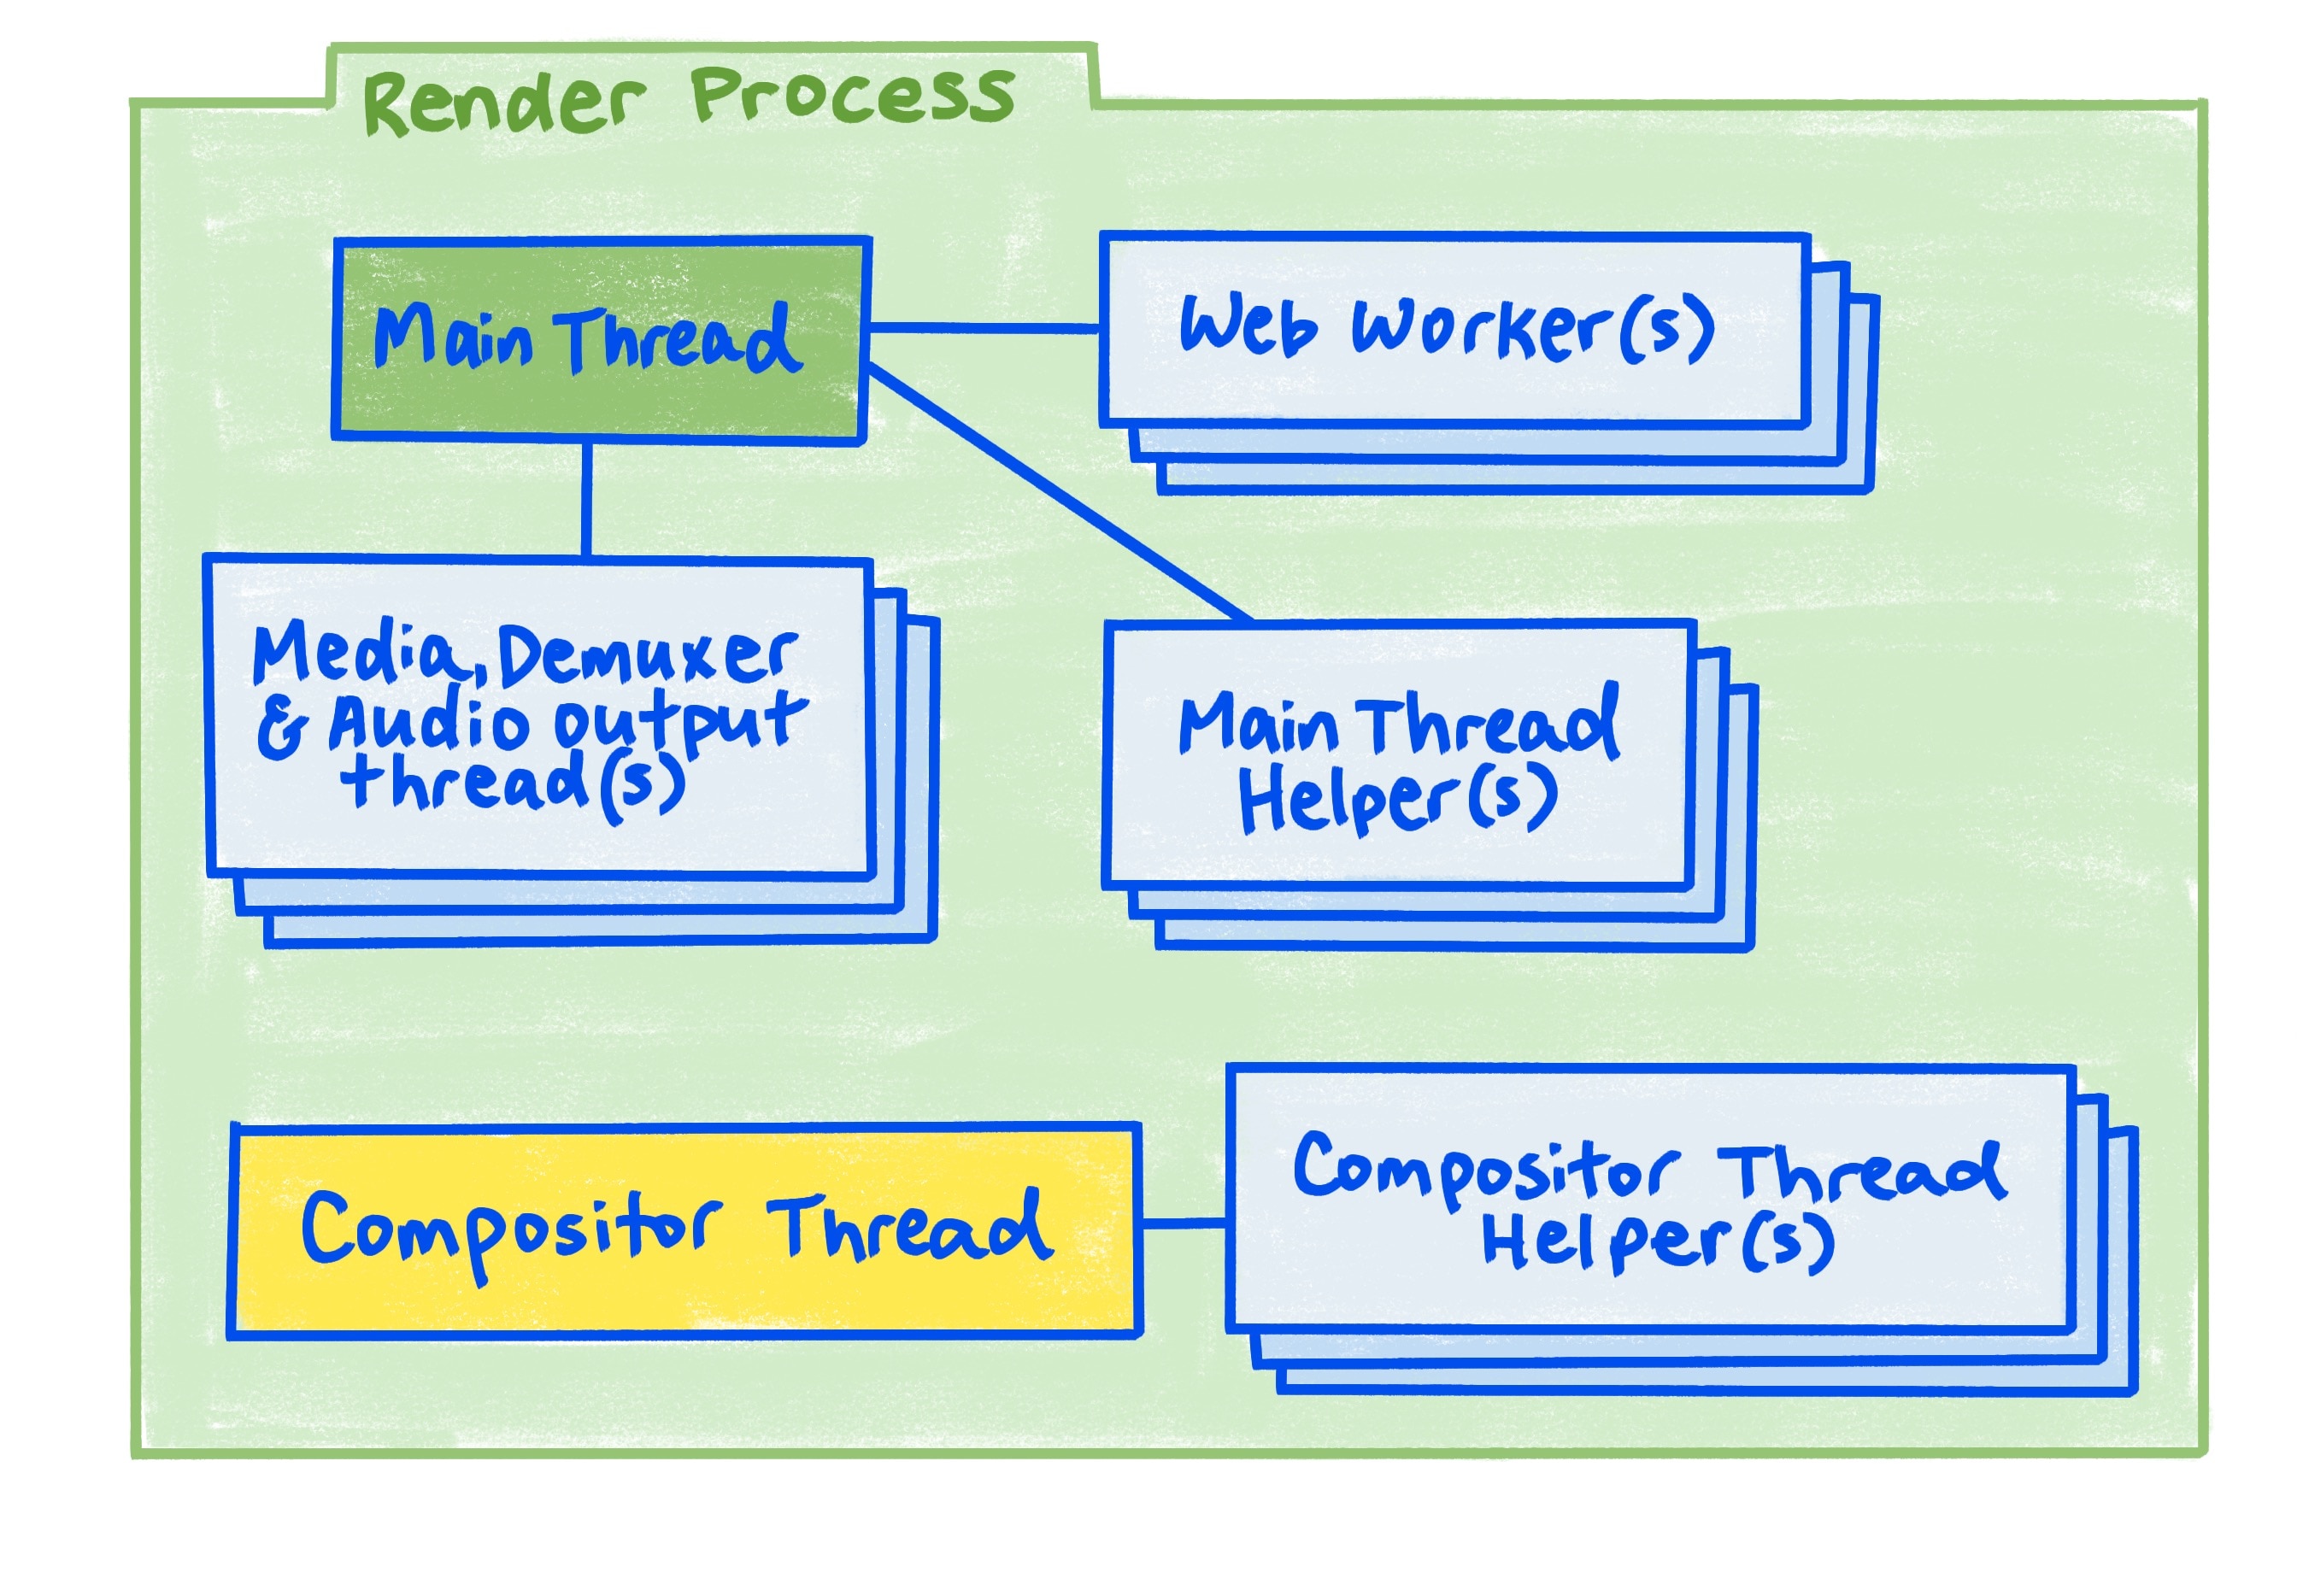 نموداری از فرآیند رندر همانطور که در مقاله توضیح داده شده است.